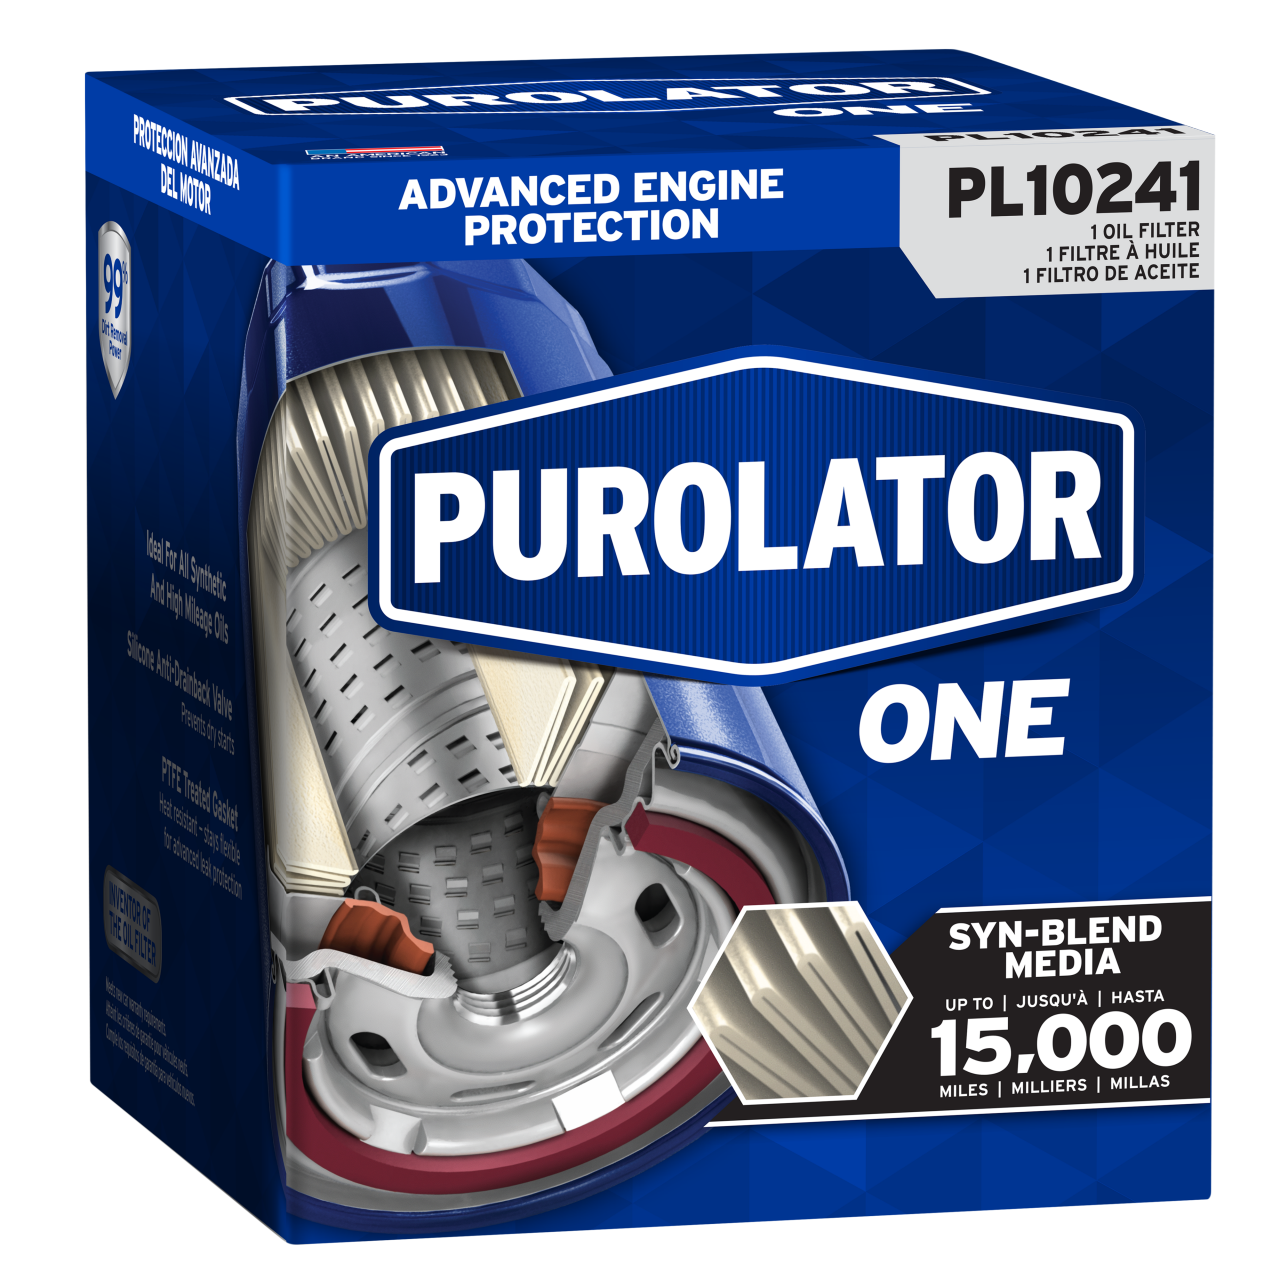 Pour votre prochain changement d’huile, rappelez-vous que les filtres à huile PurolatorONE™ offrent jusqu’à 15 000 miles de protection avancée du moteur.